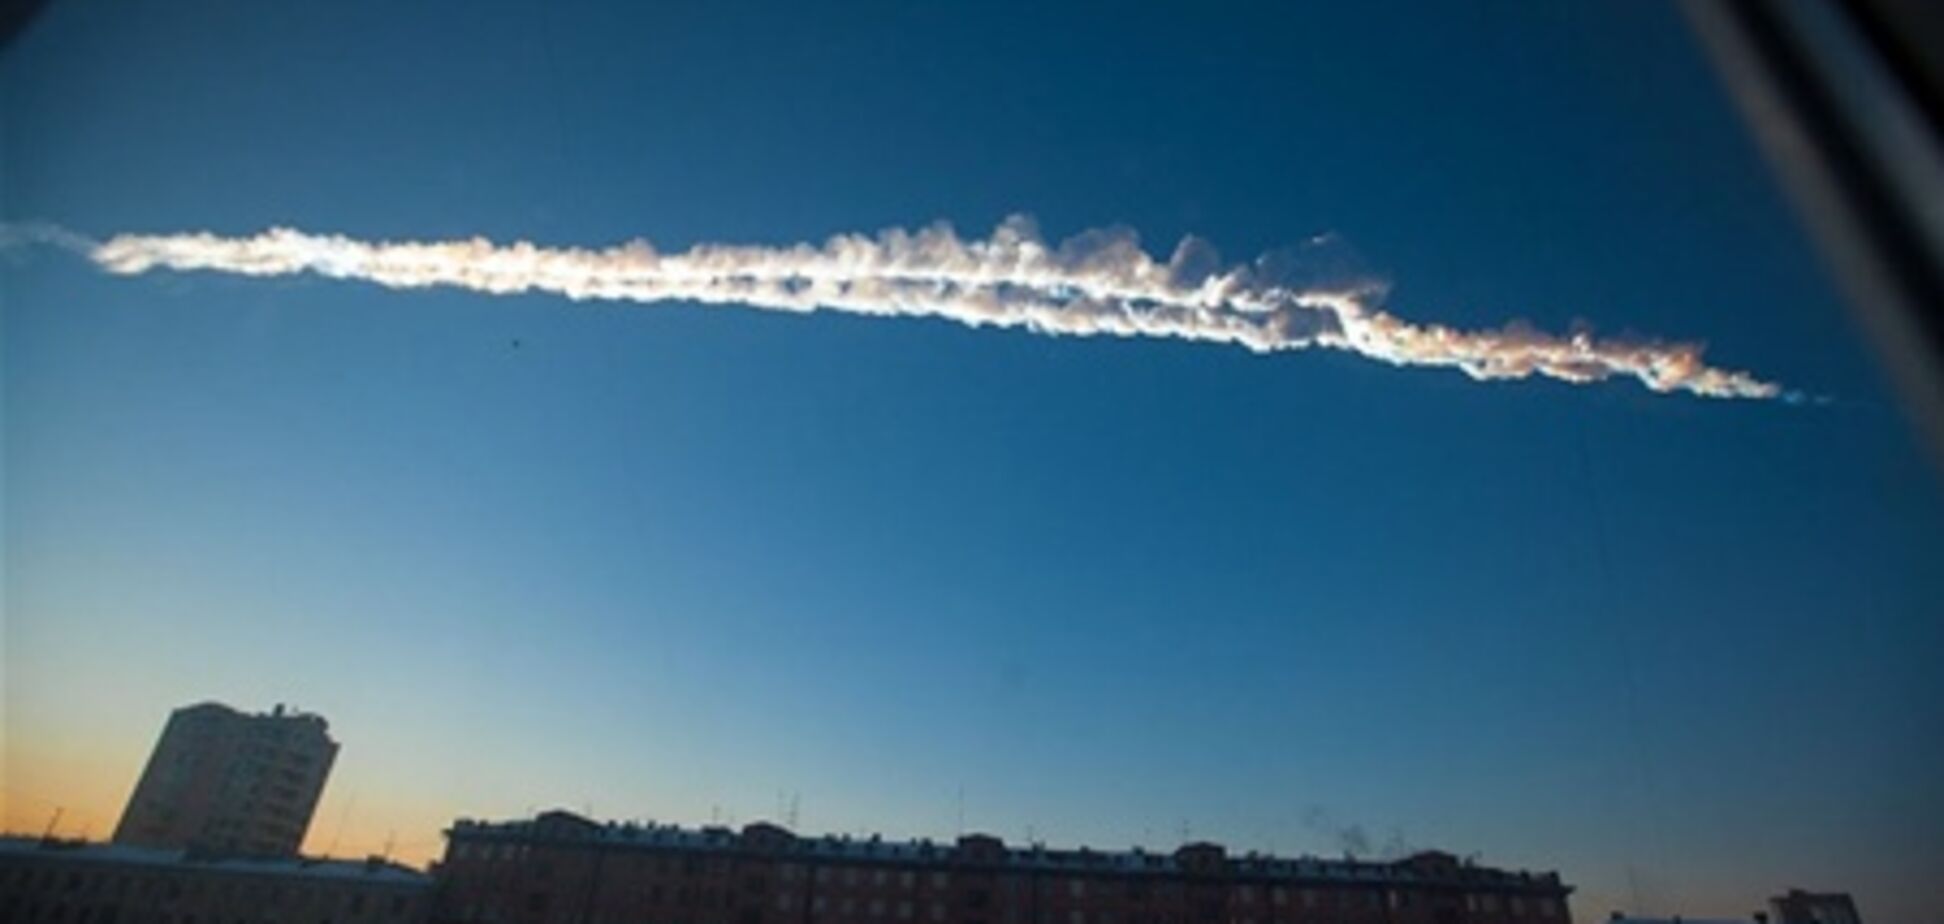 МВС Росії назвало три місця падіння метеорита. Відео